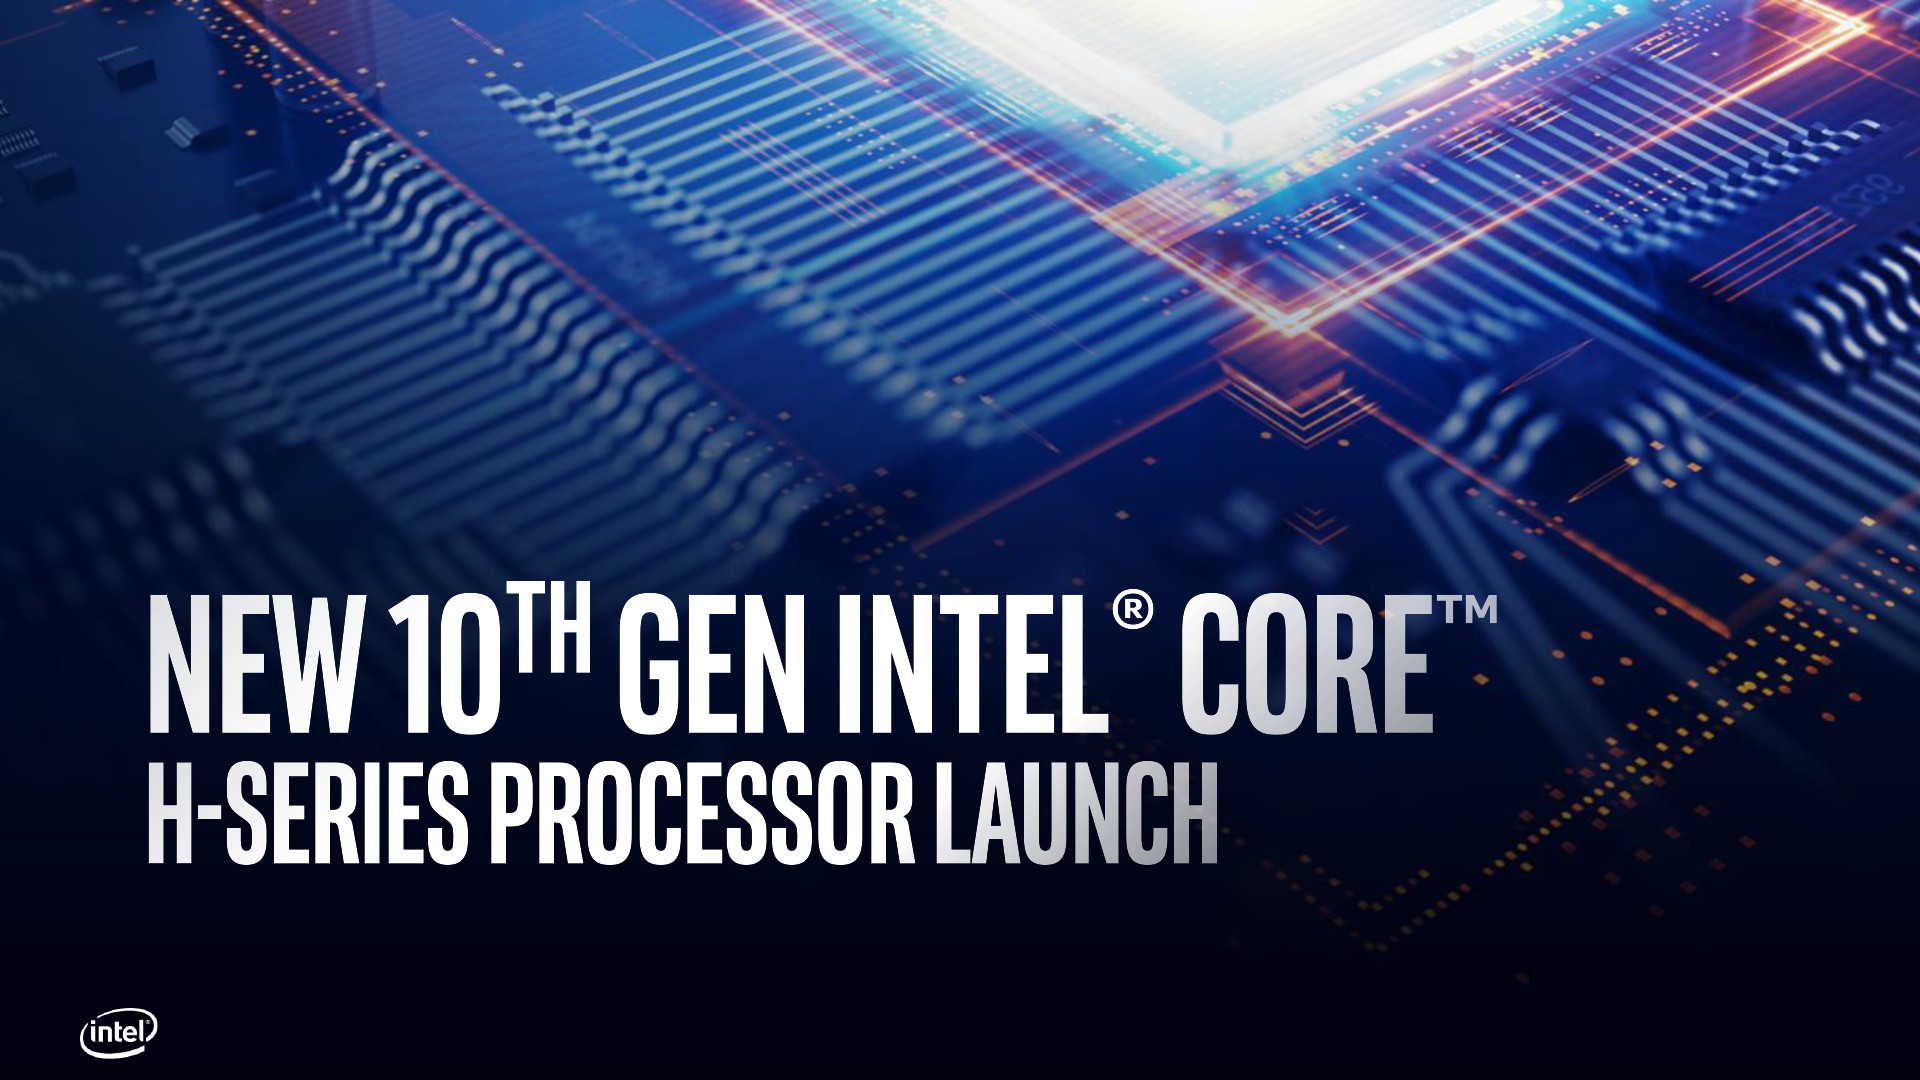 10th Gen Intel Core H Series Processor